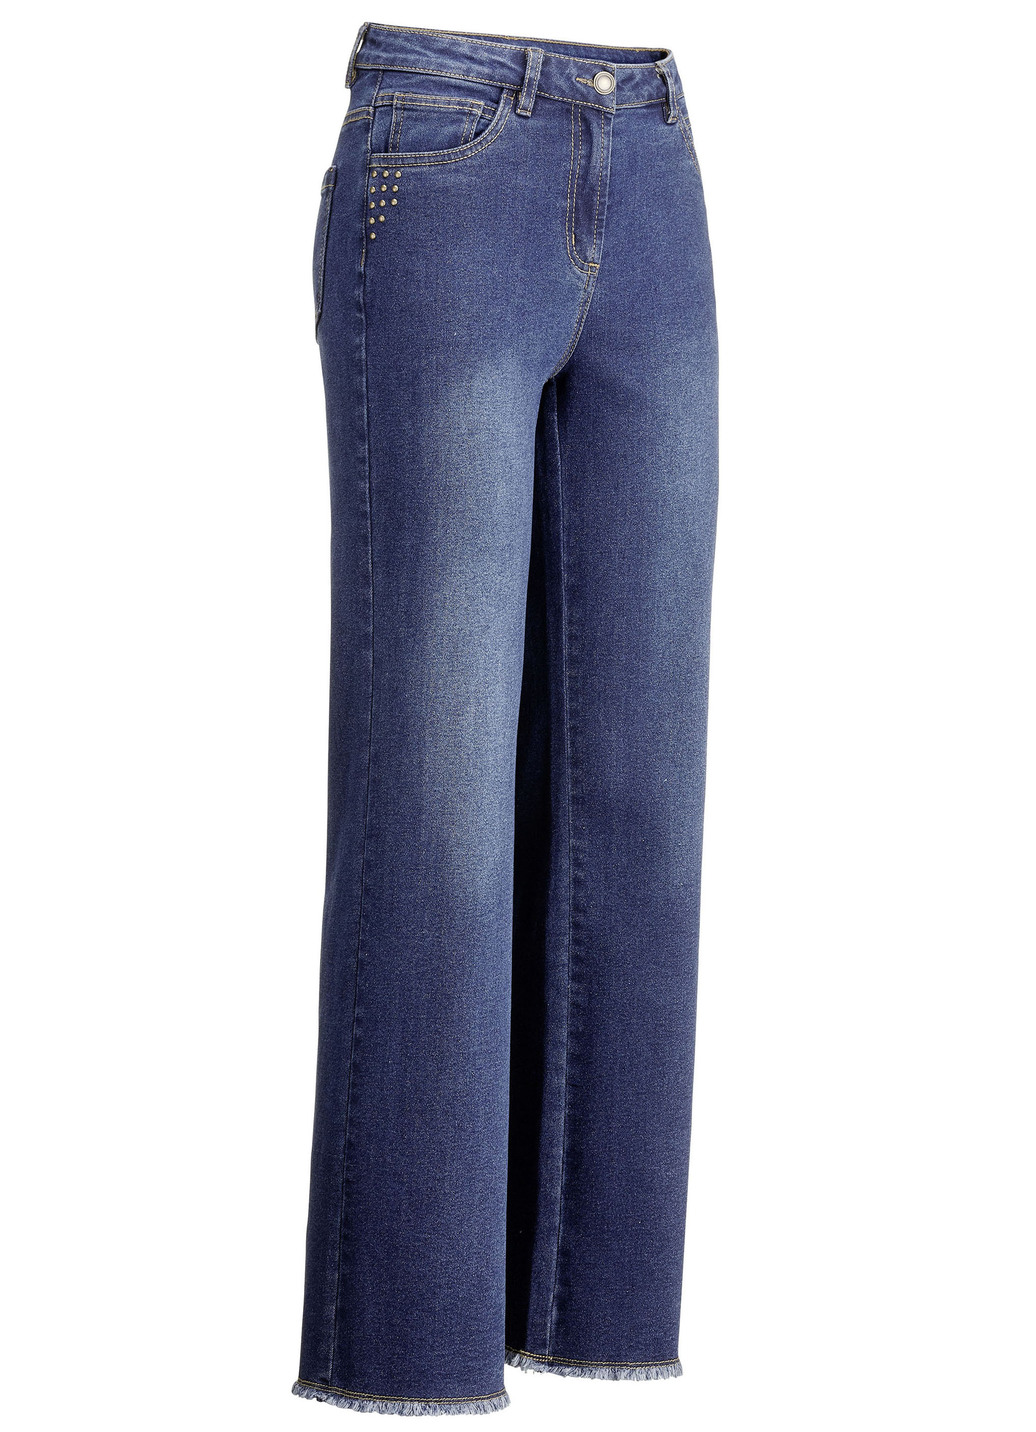 Jeans mit angesagtem Fransensaum, Dunkelblau, Größe 40 von BADER